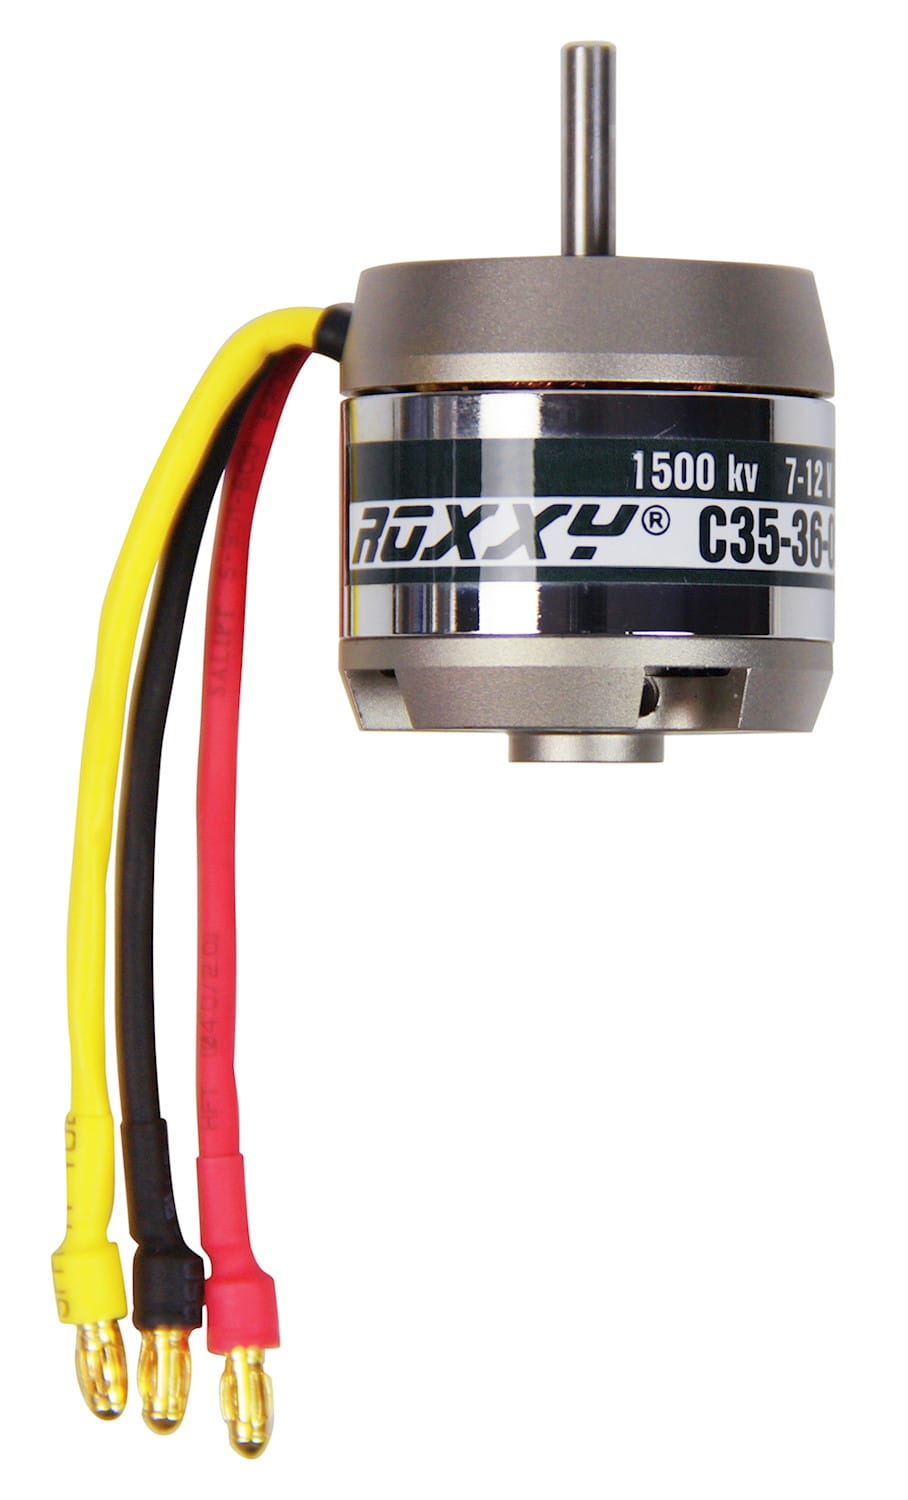 Multiplex ROXXY Brushless Motor BL Outrunner C35-36-1500kV